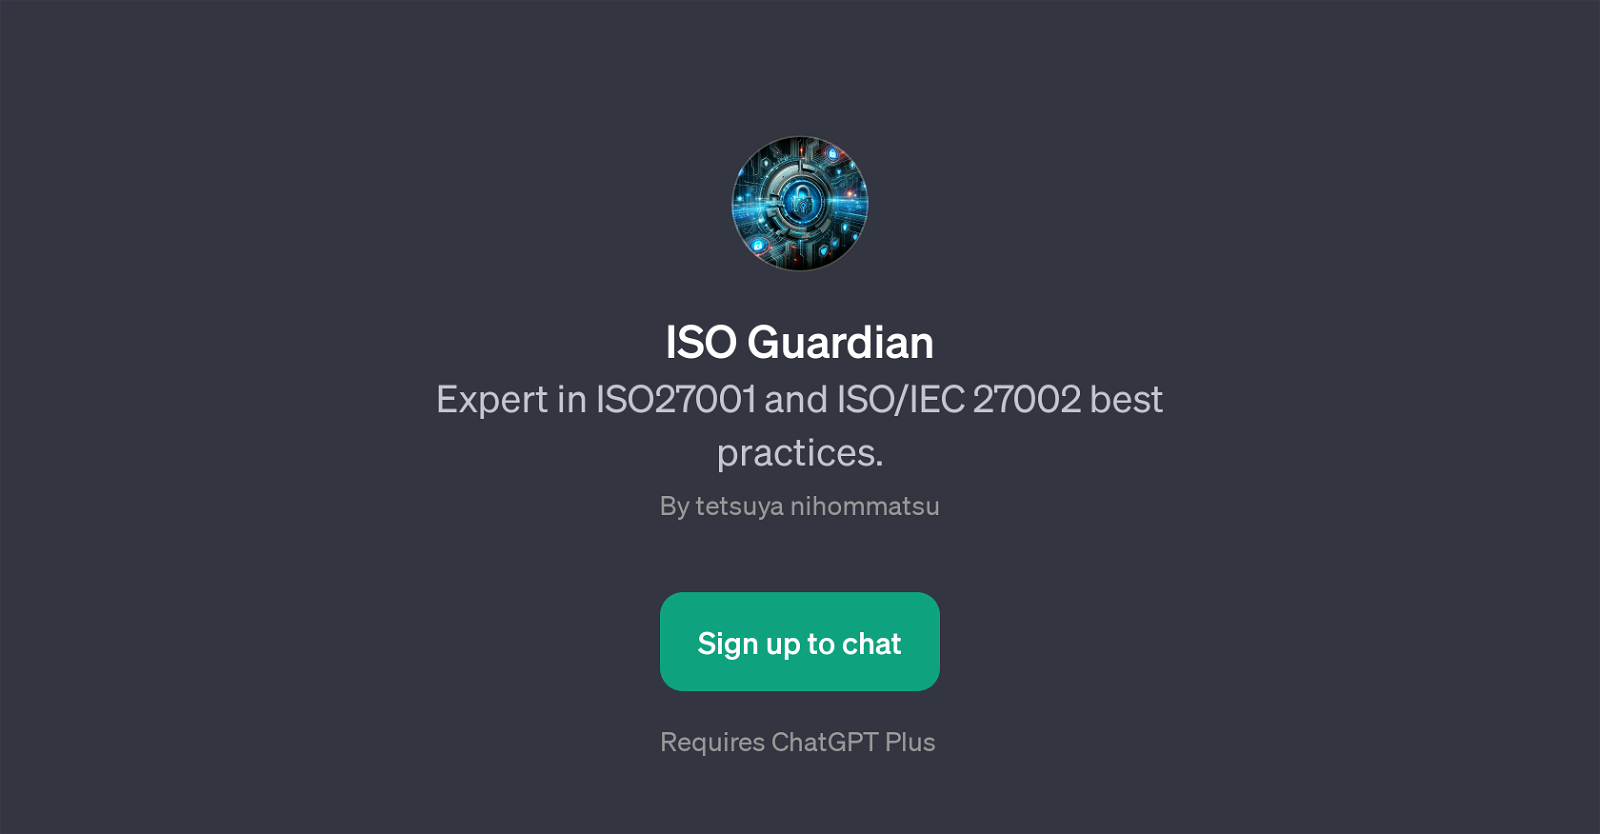 ISO Guardian website